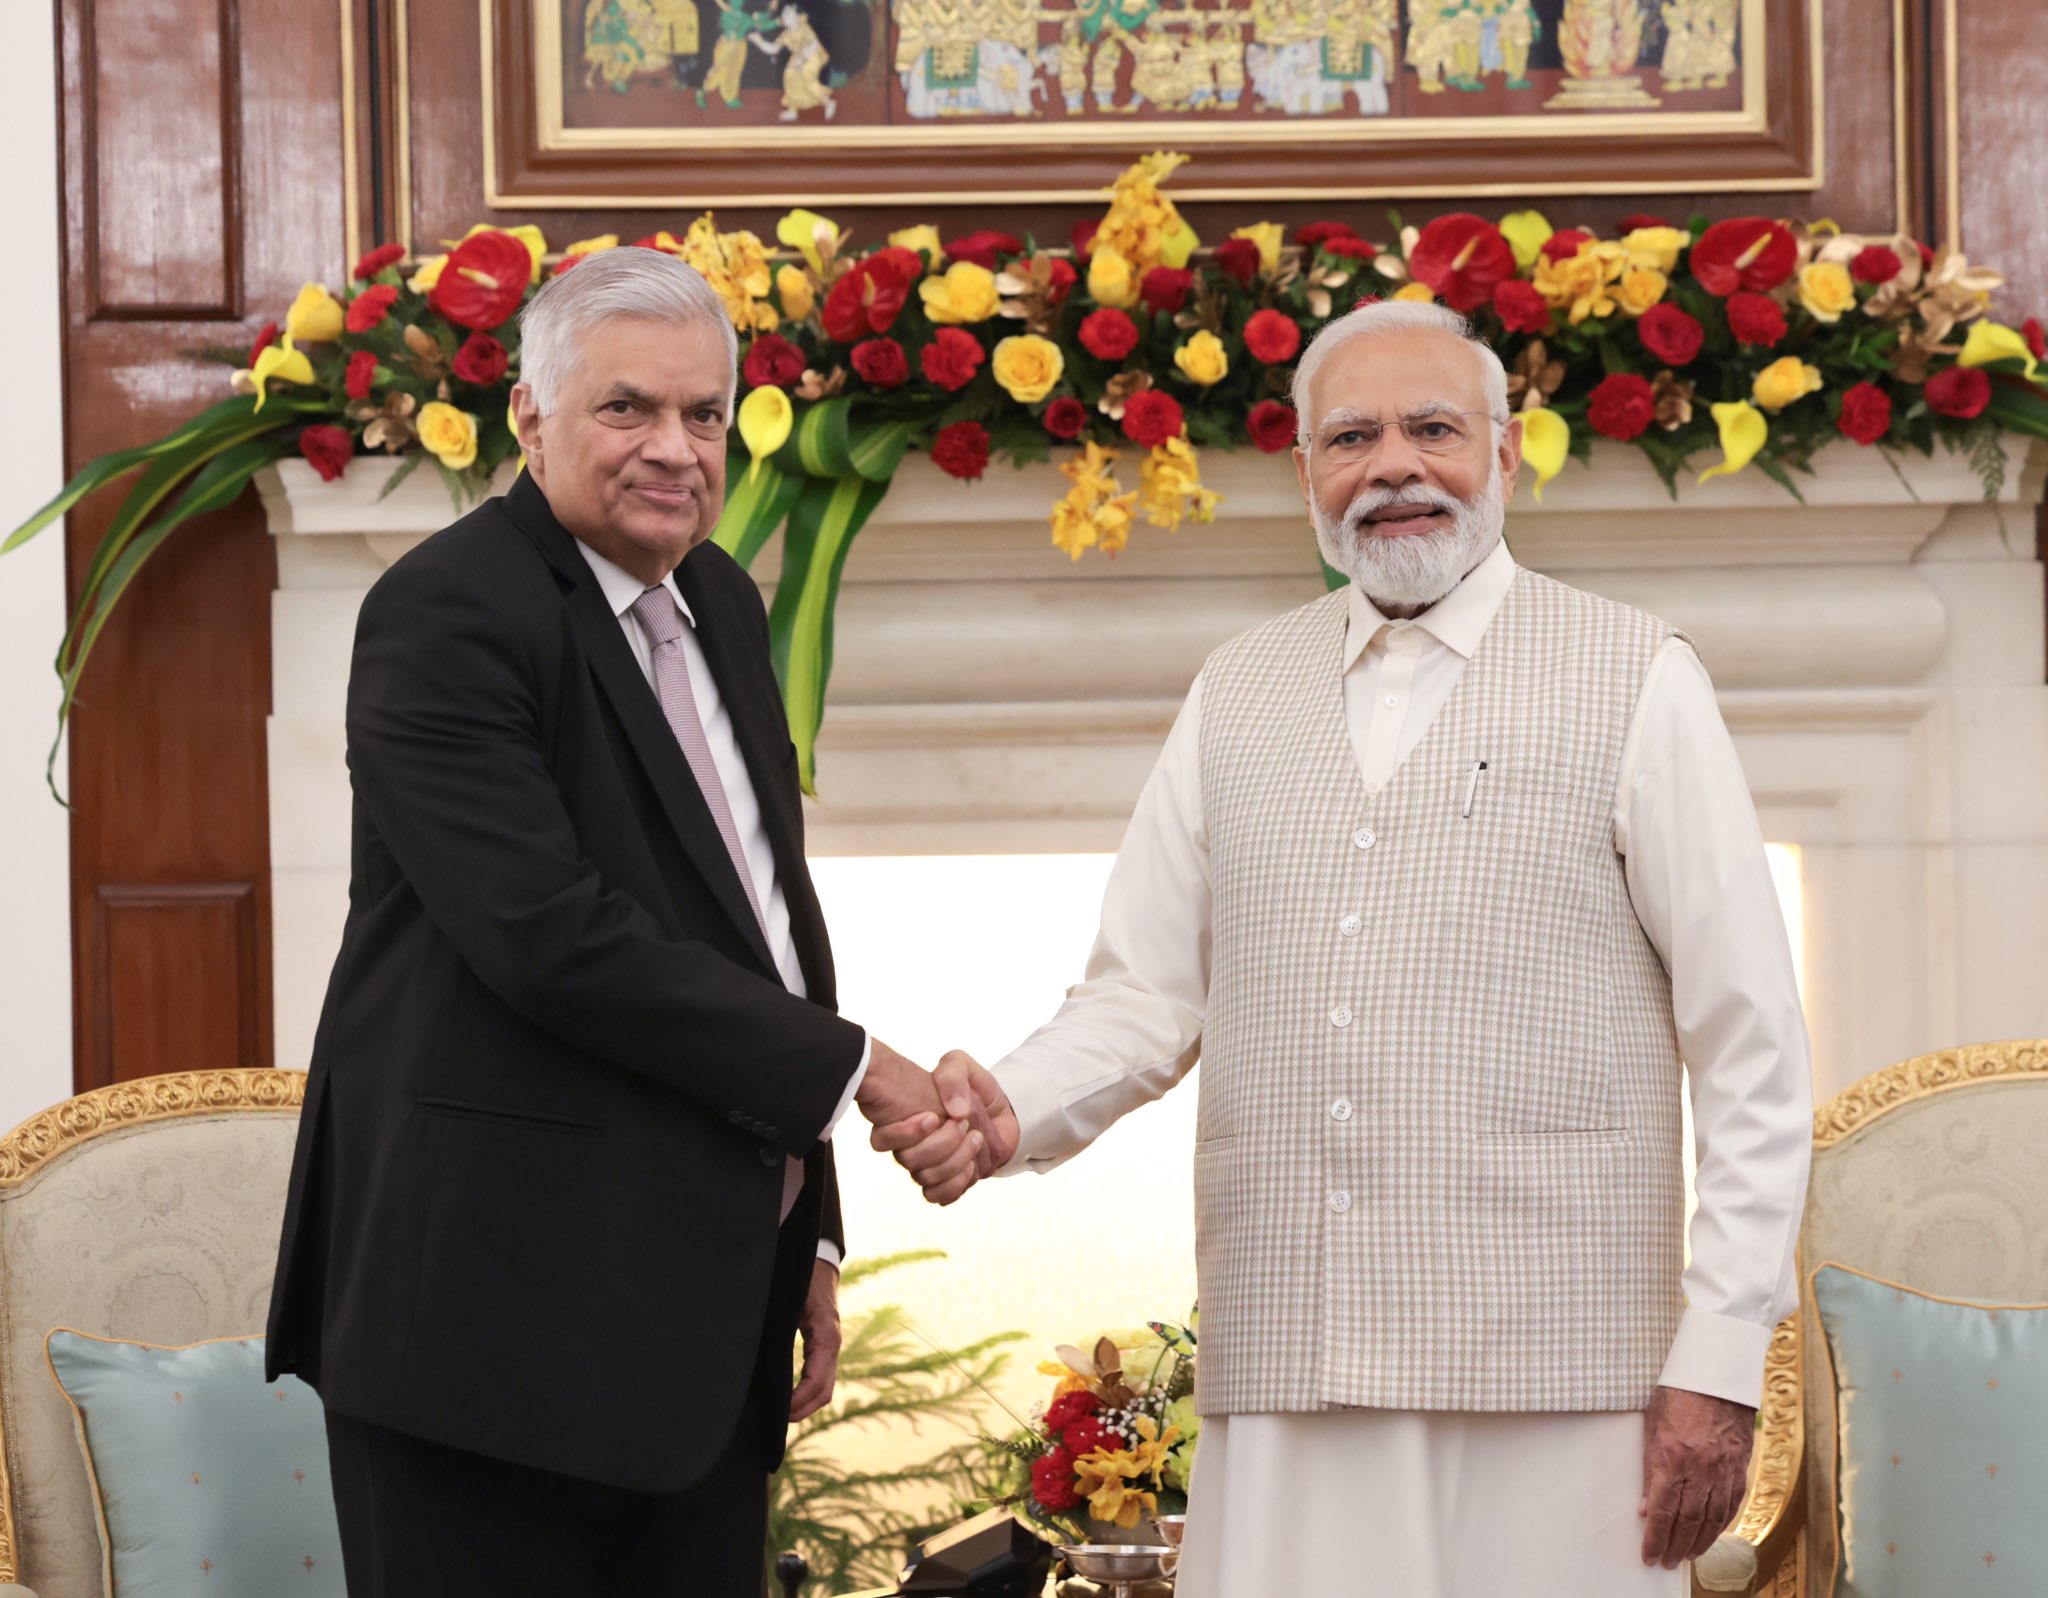 وزیر اعظم مودی اور سری لنکا کے صدر کے درمیان دو طرفہ بات چیت، تعاون کے کئی امور پر بات چیت